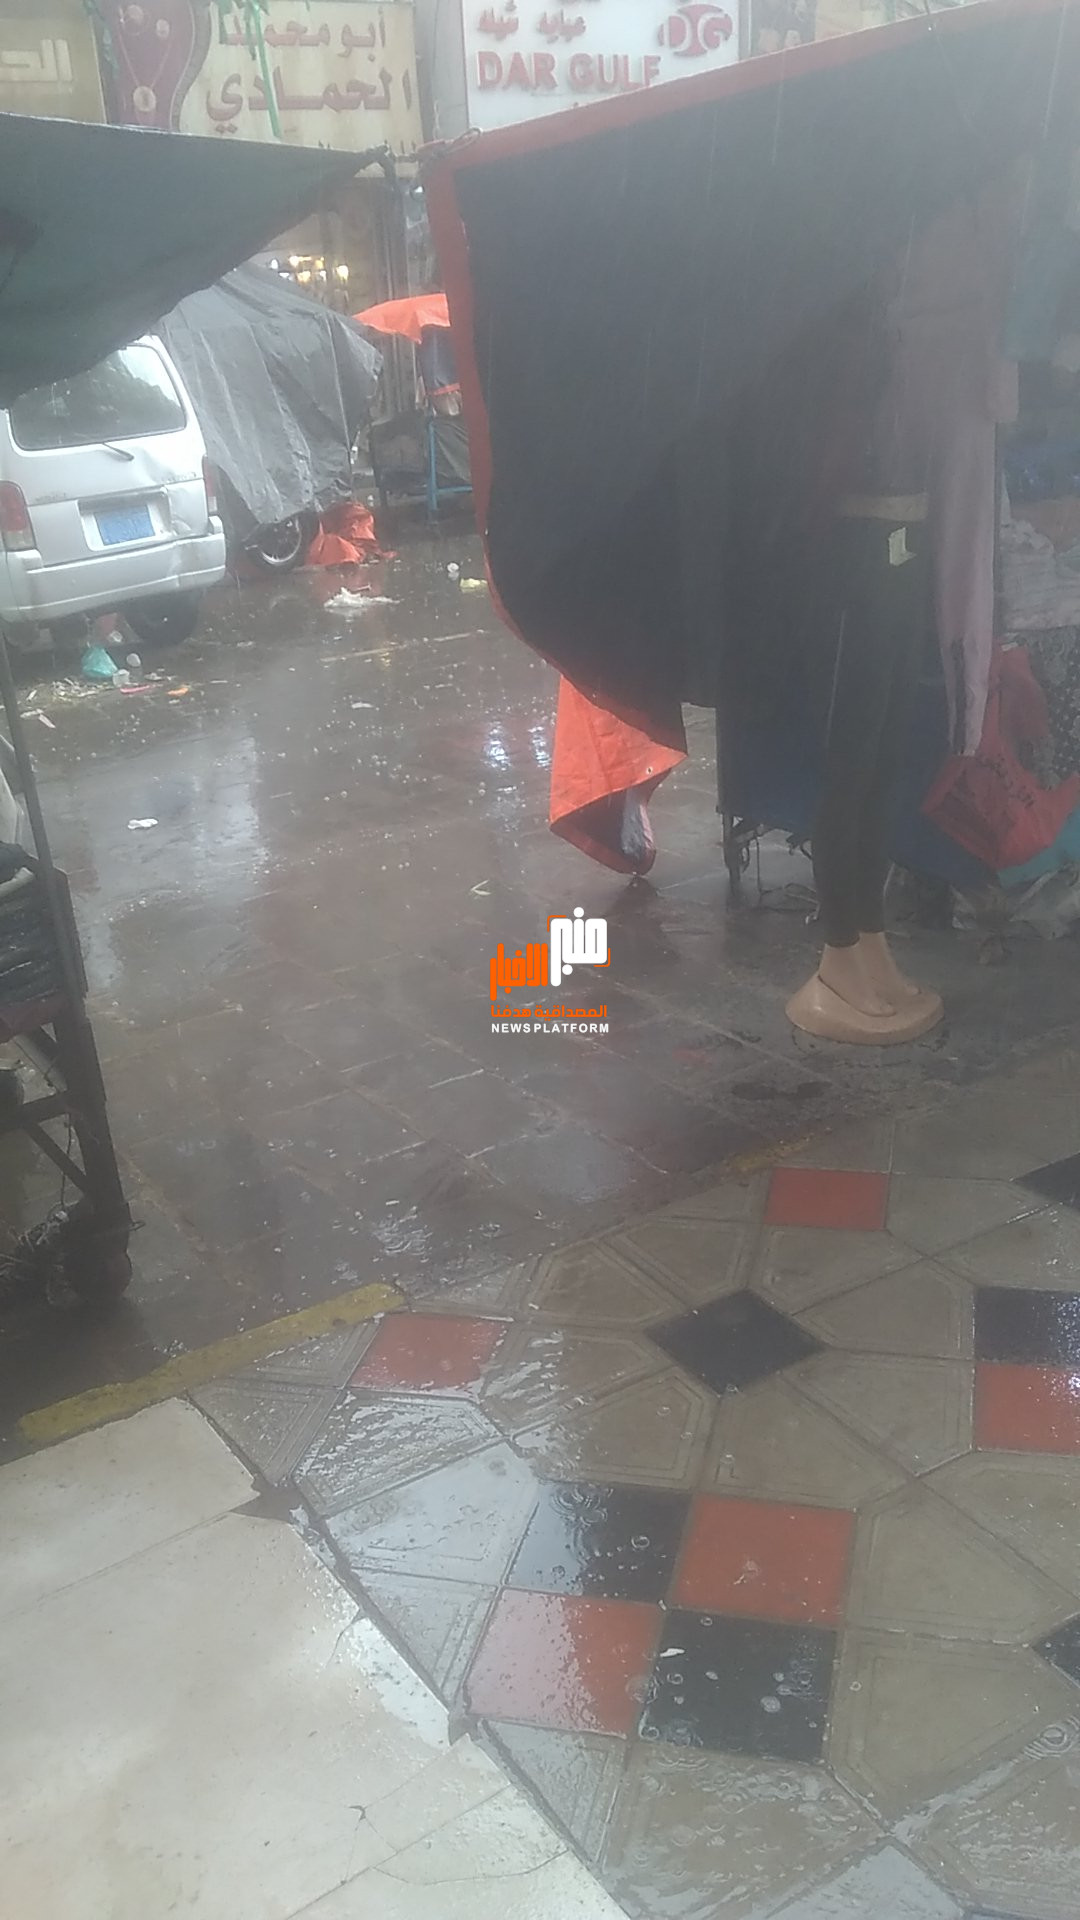 يحدث الان.. أمطار غزيرة في صنعاء (صورة)